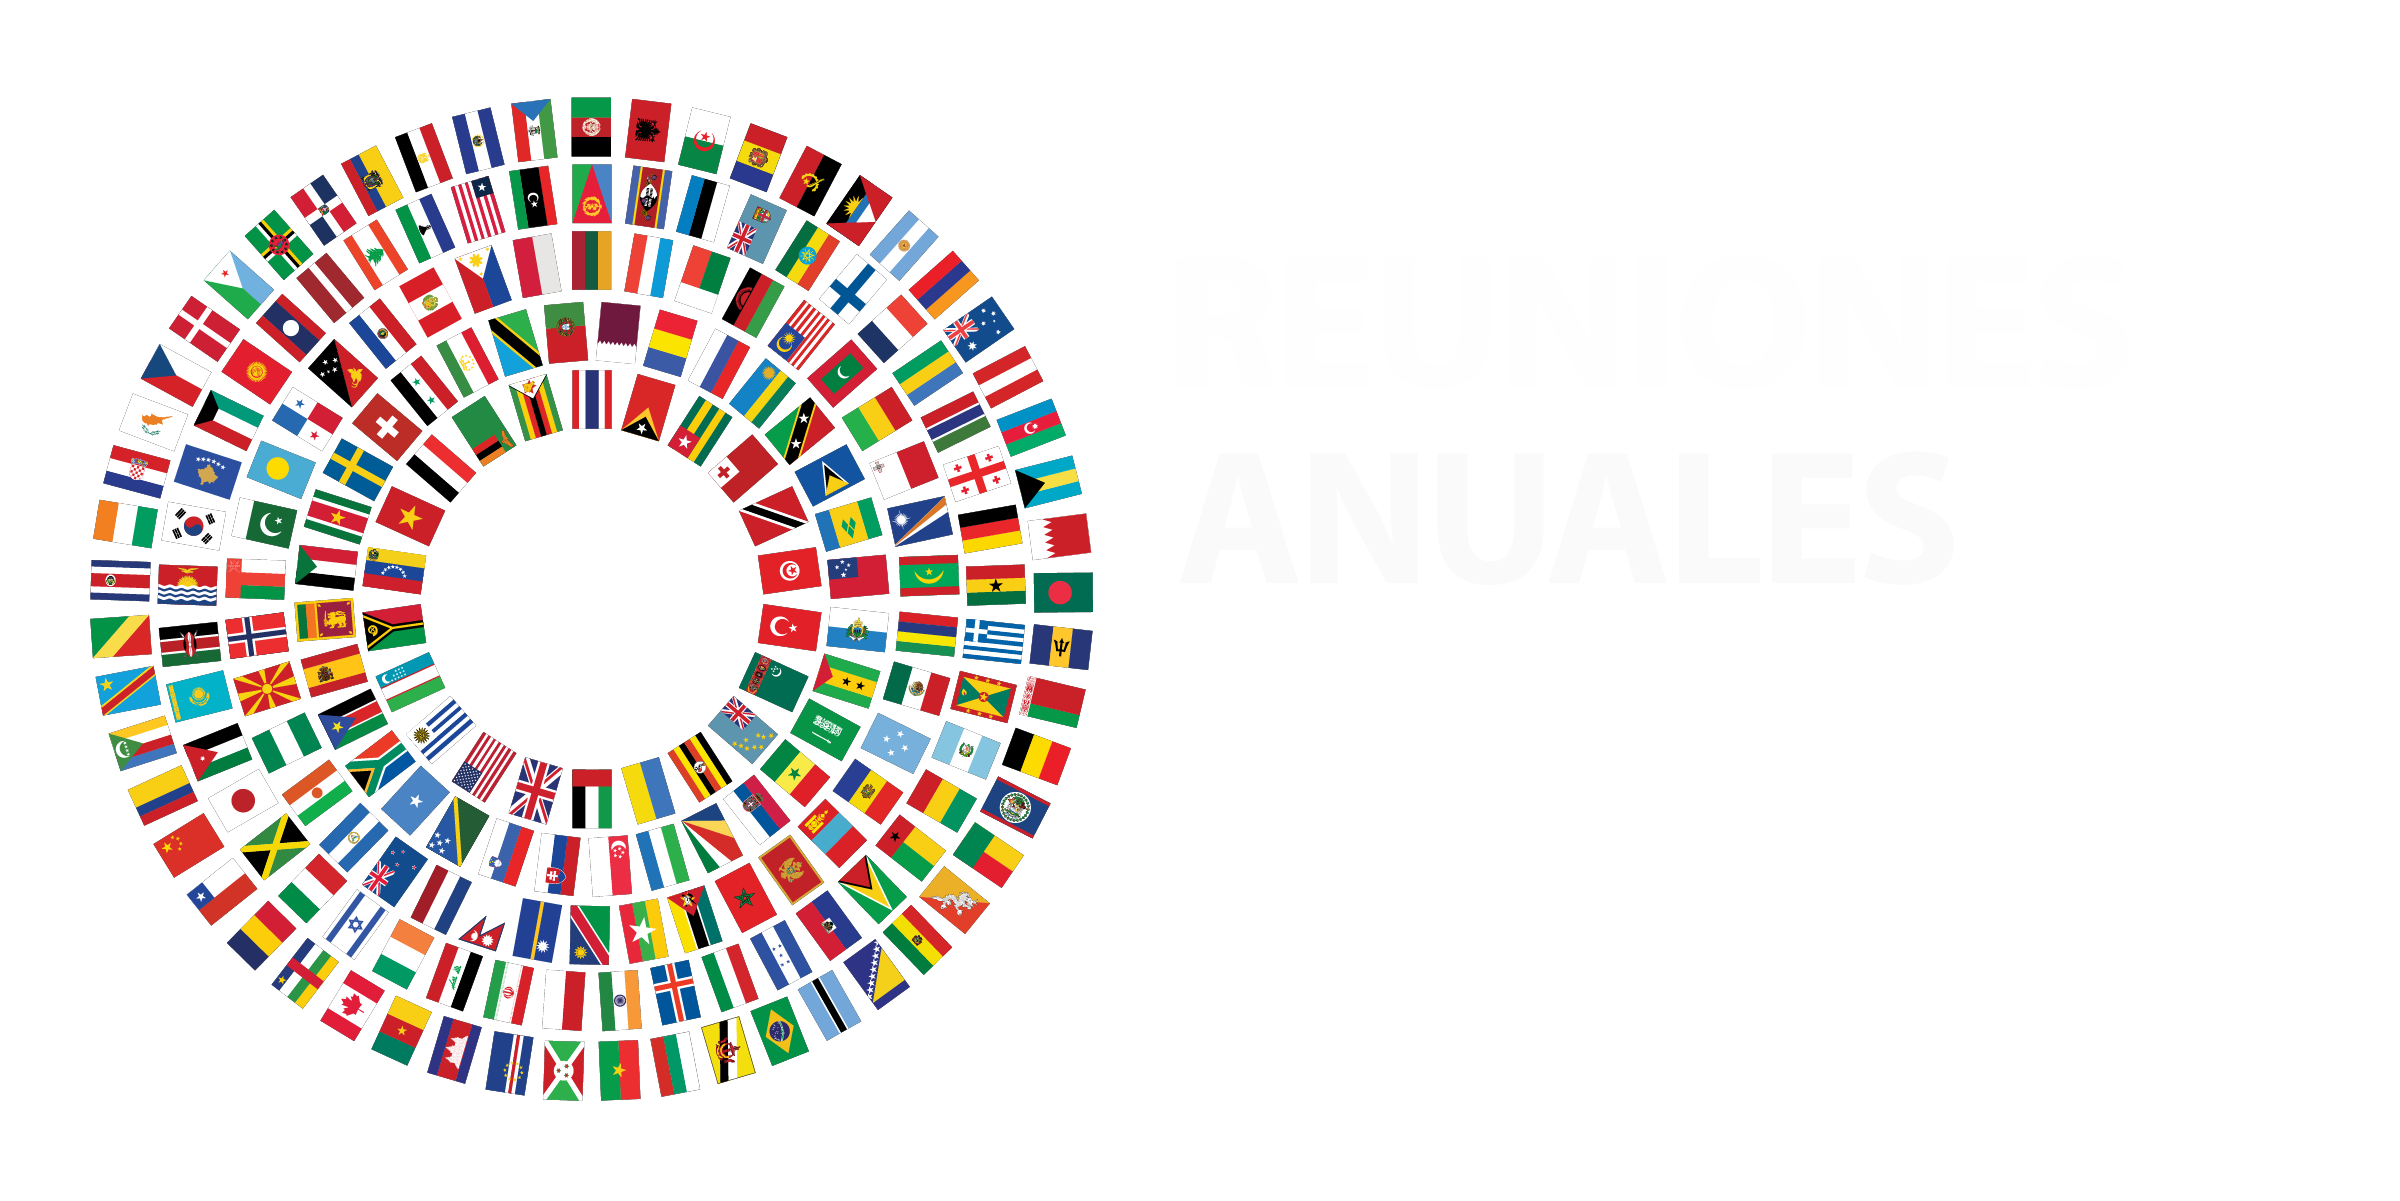 ANUNCIO SOBRE LAS REUNIONES ANUALES DE 2021 DEL GRUPO BANCO MUNDIAL Y EL FONDO MONETARIO INTERNACIONAL